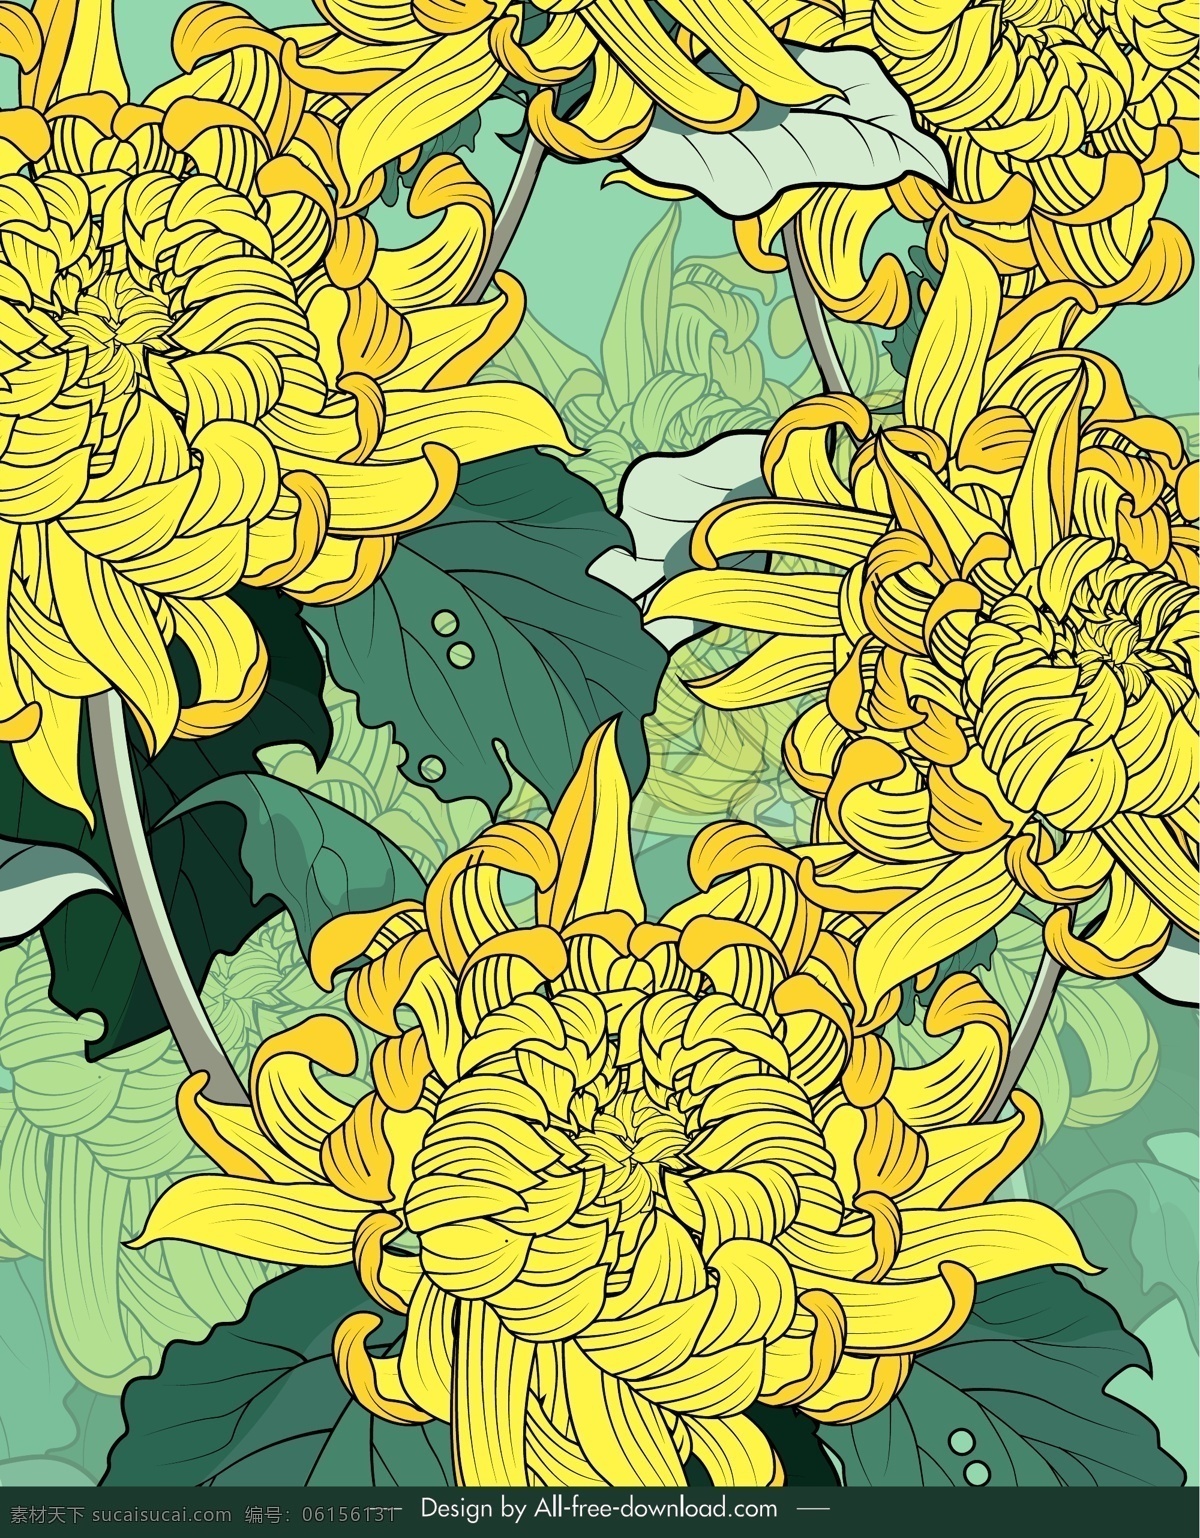 黄色 盛开 菊花 彩绘 矢量图 格式 矢量 高清图片